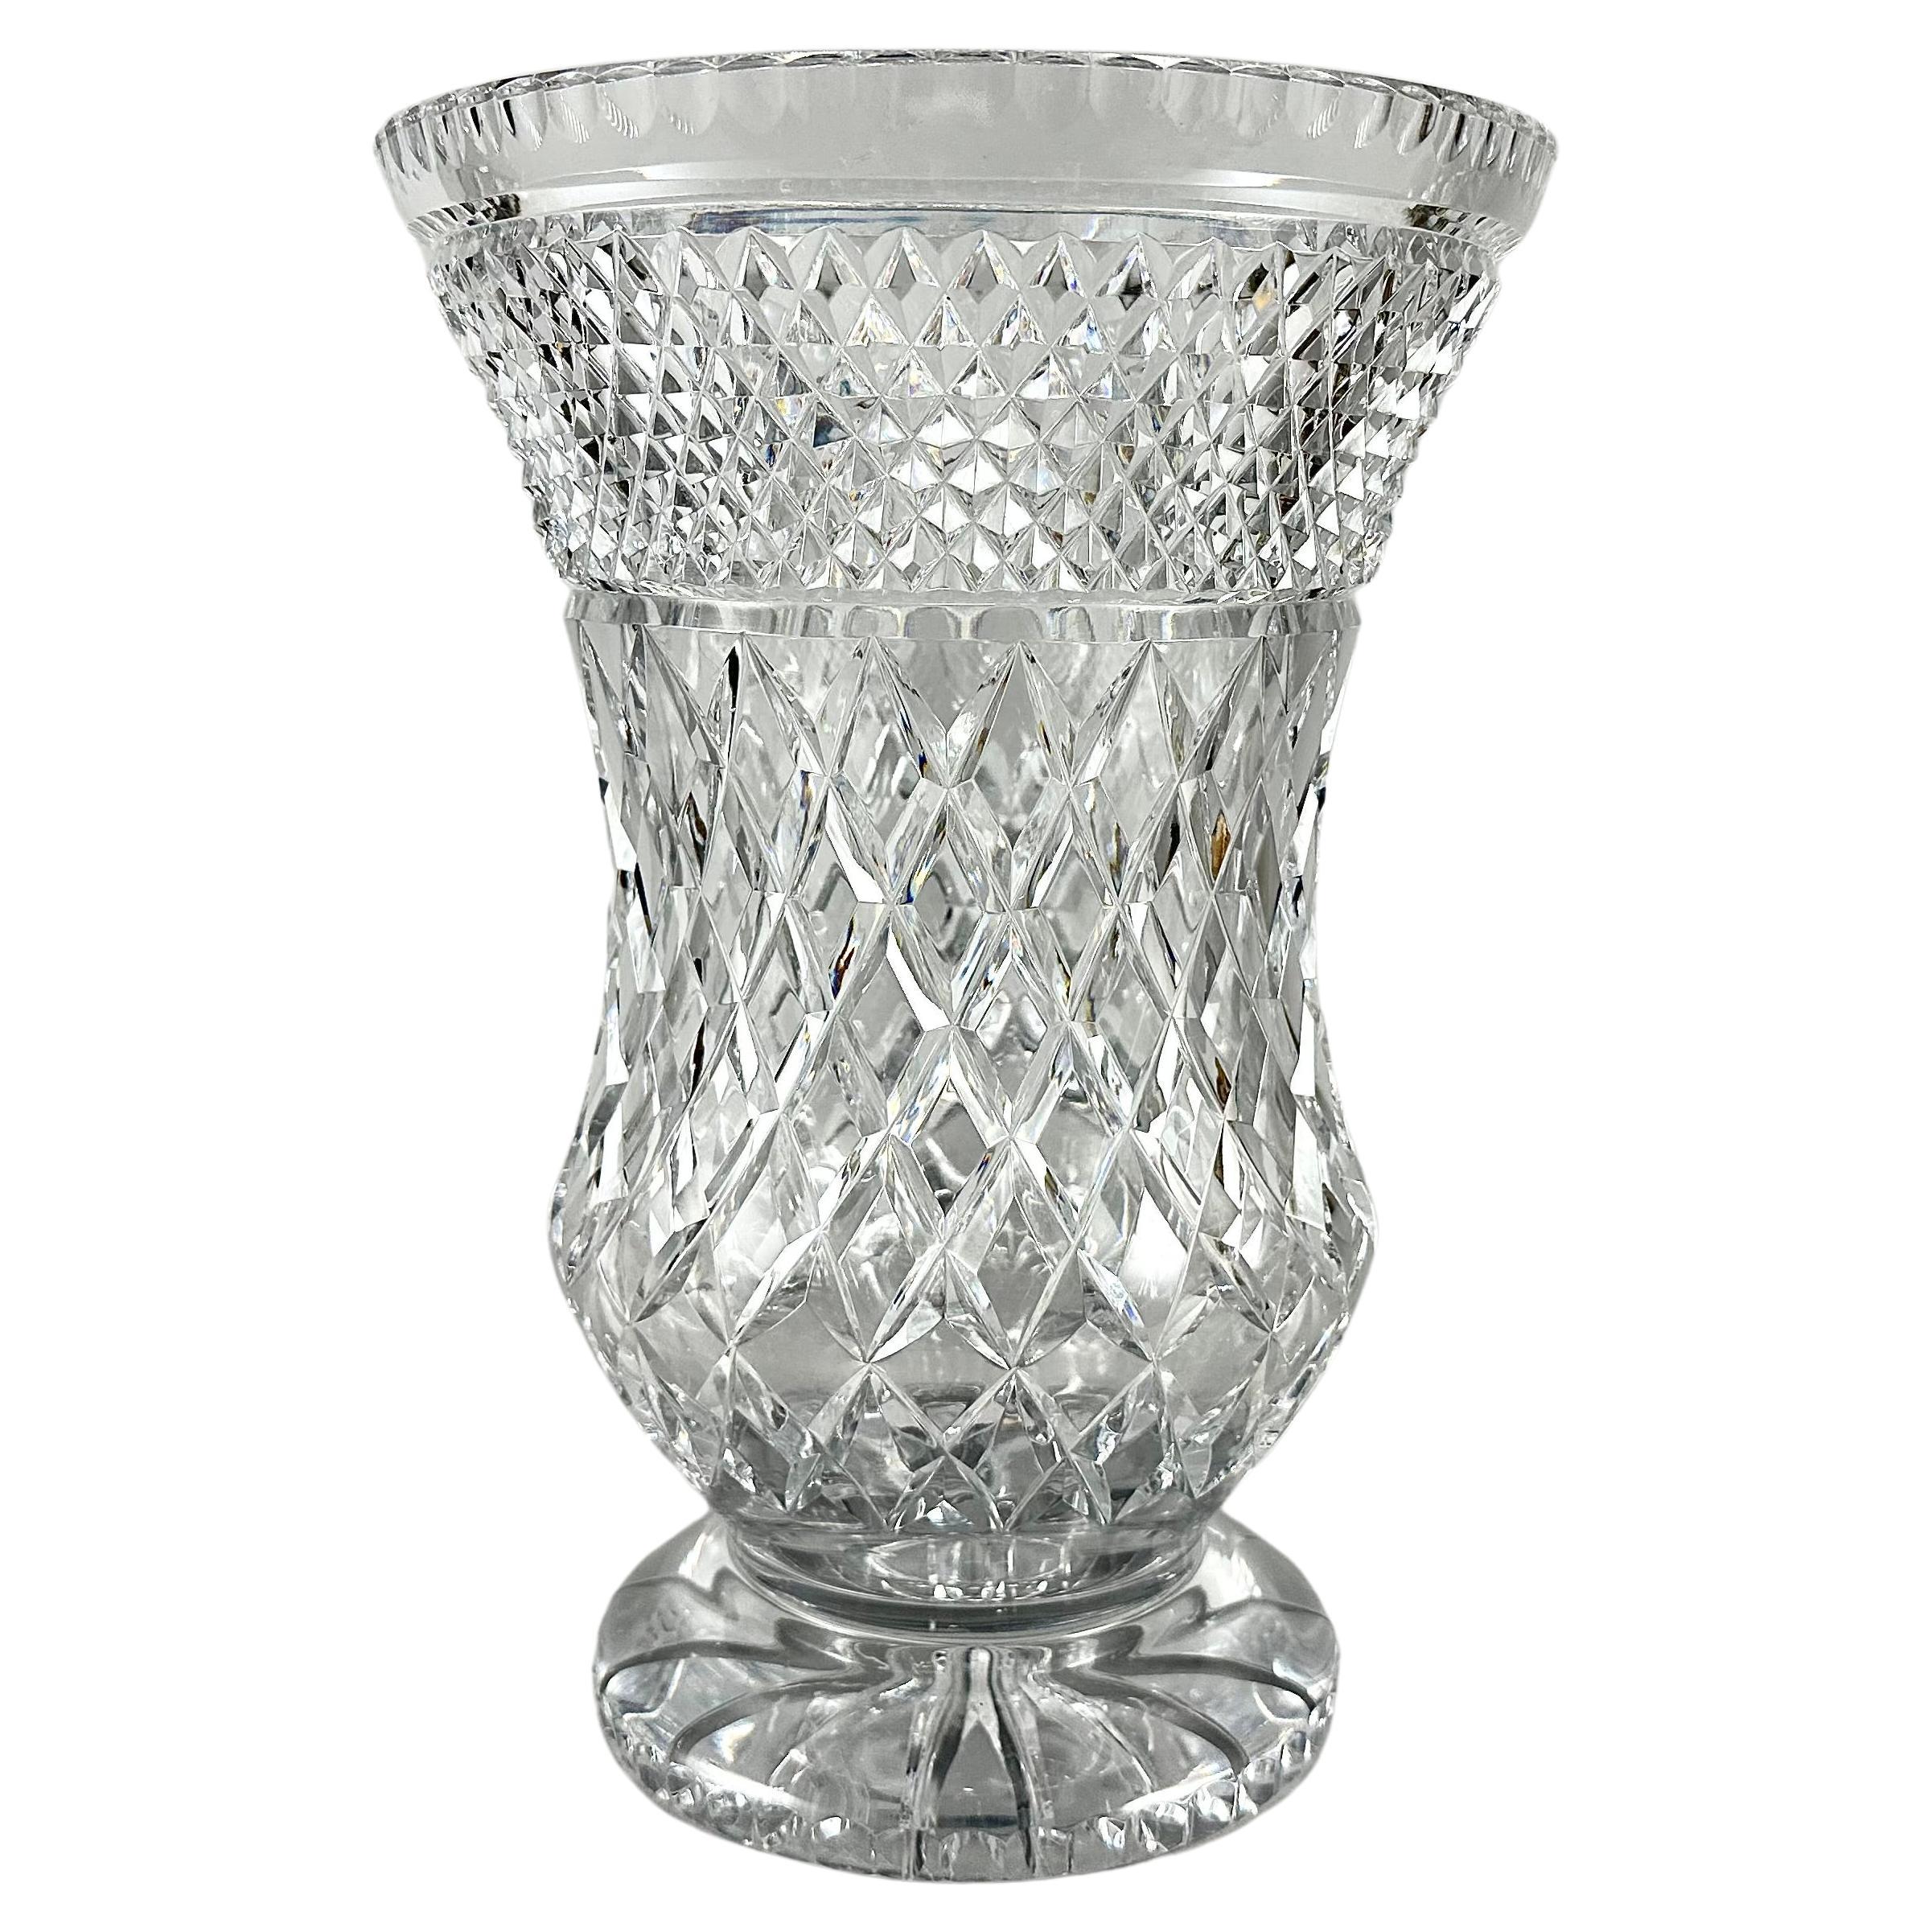 Vase Large Crystal Decorative Vase Made Of Cut Crystal Vintage France 1950s